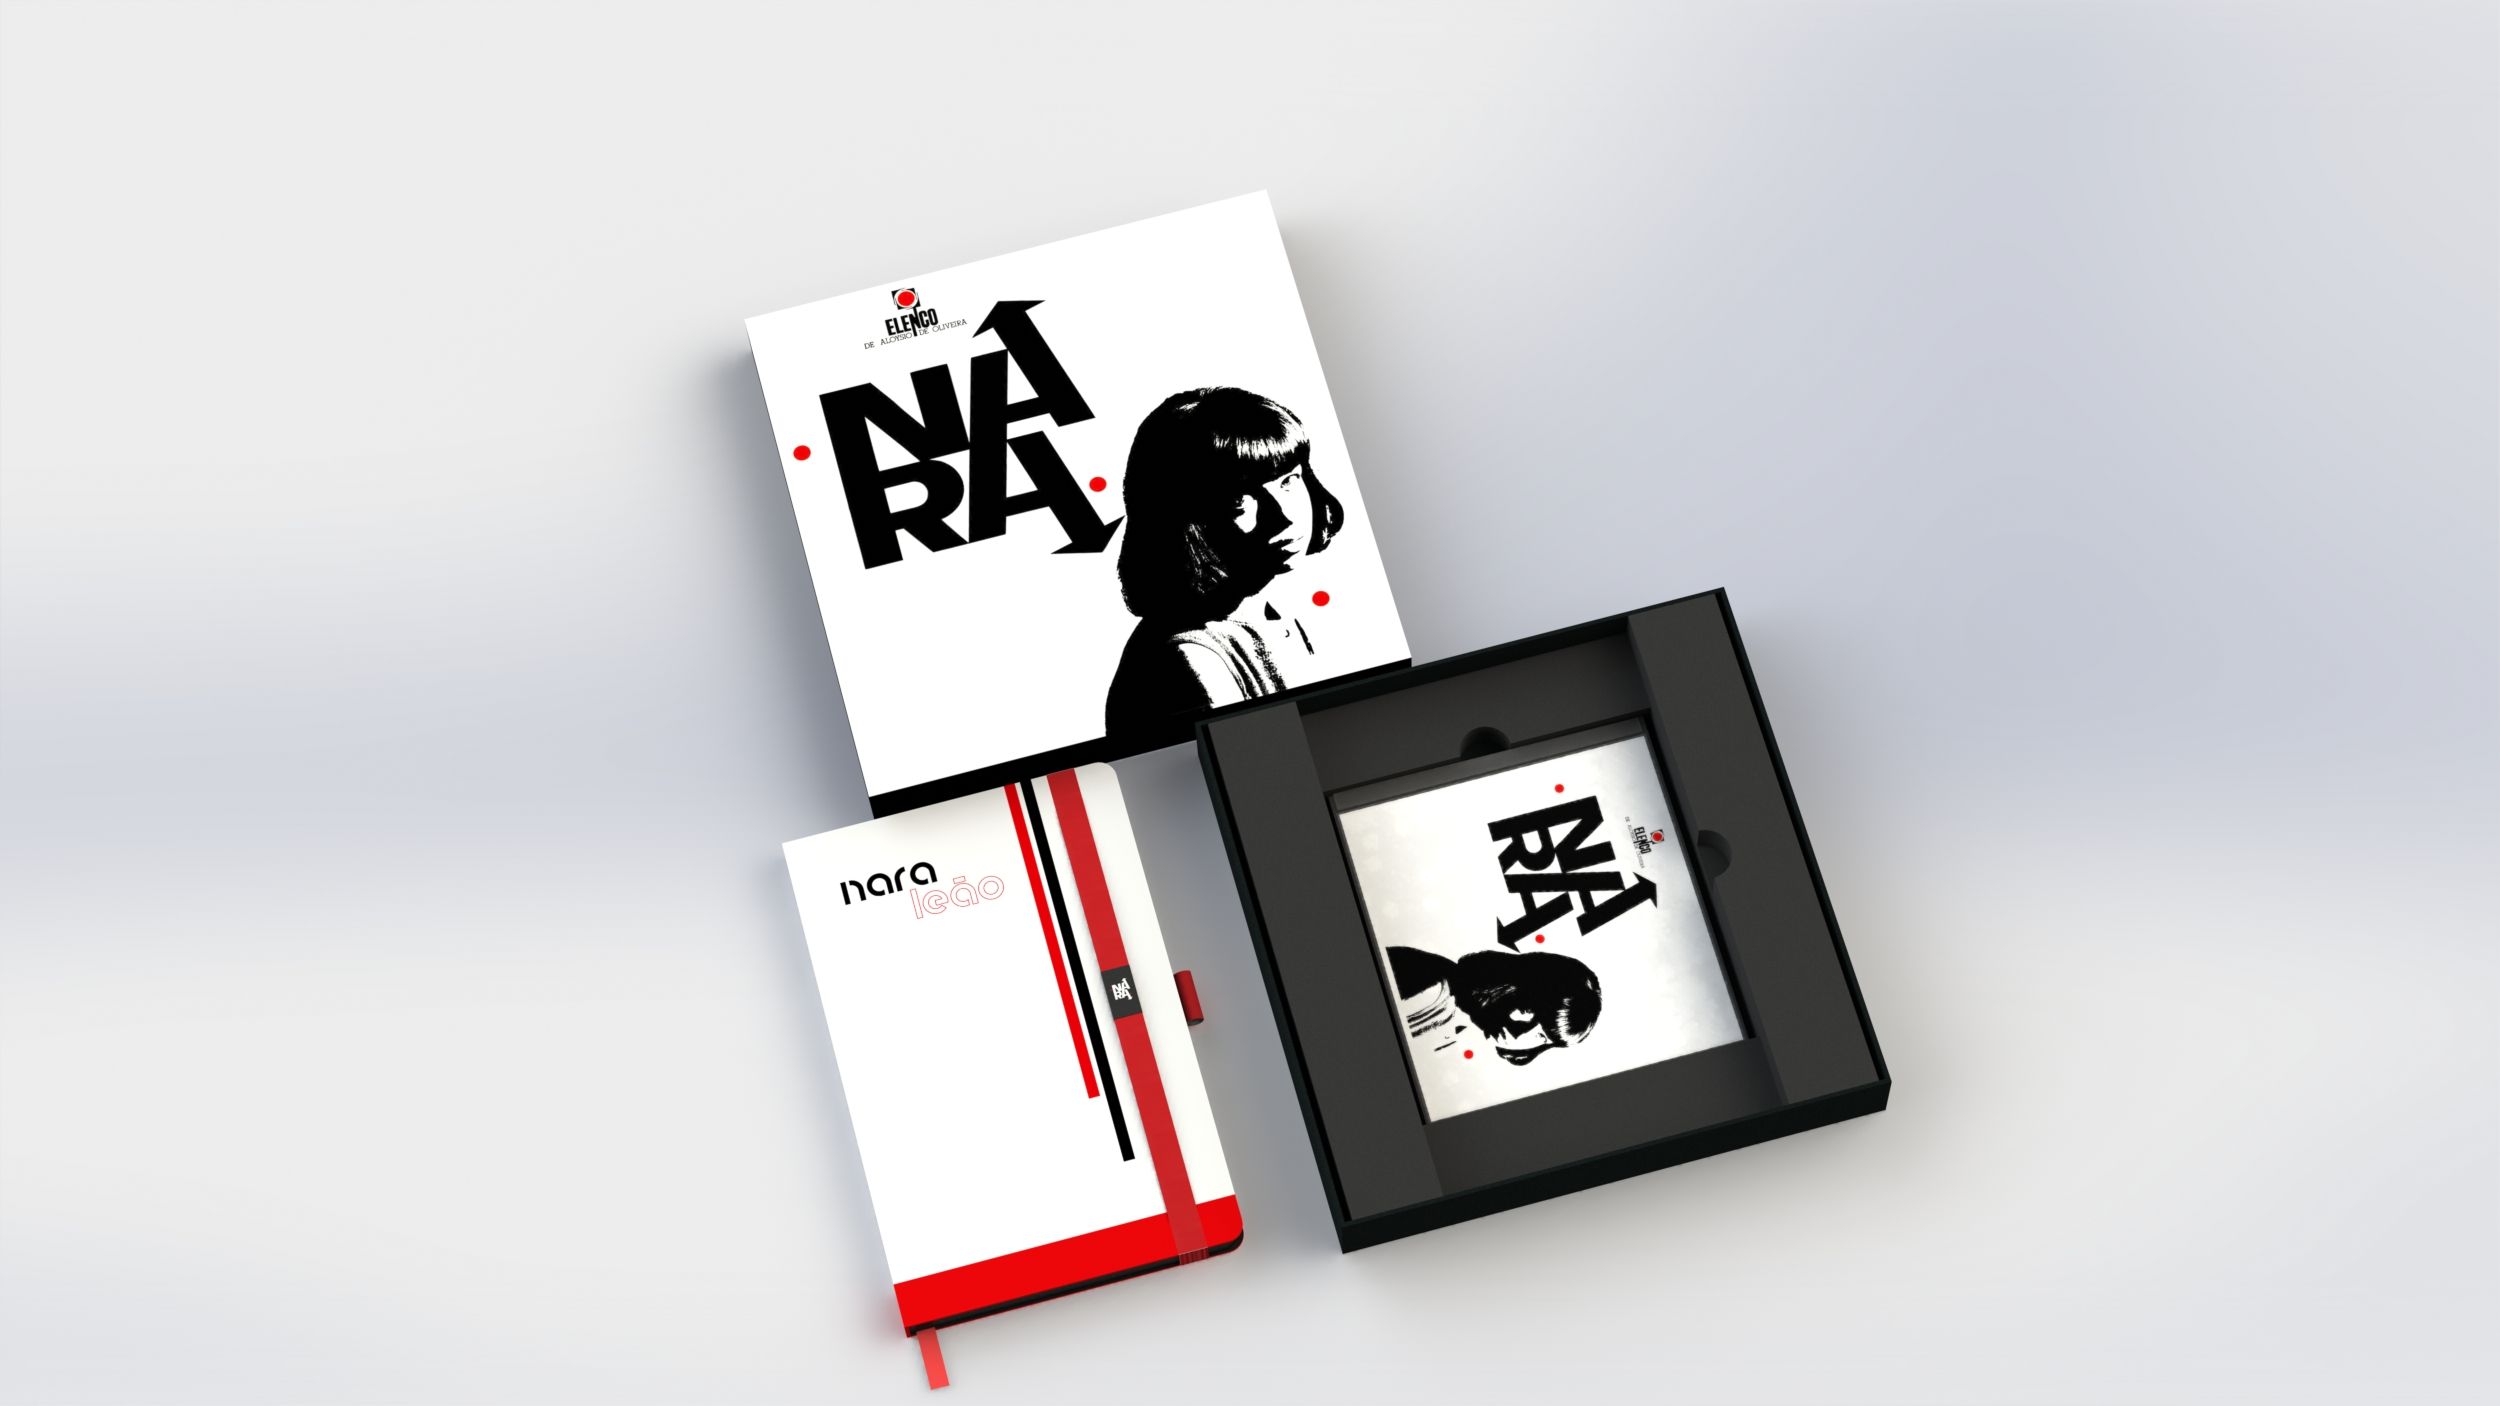 Fan Box do primeiro álbum de Nara Leão, com capa/quadro, caderneta, CD e caixa organizadora